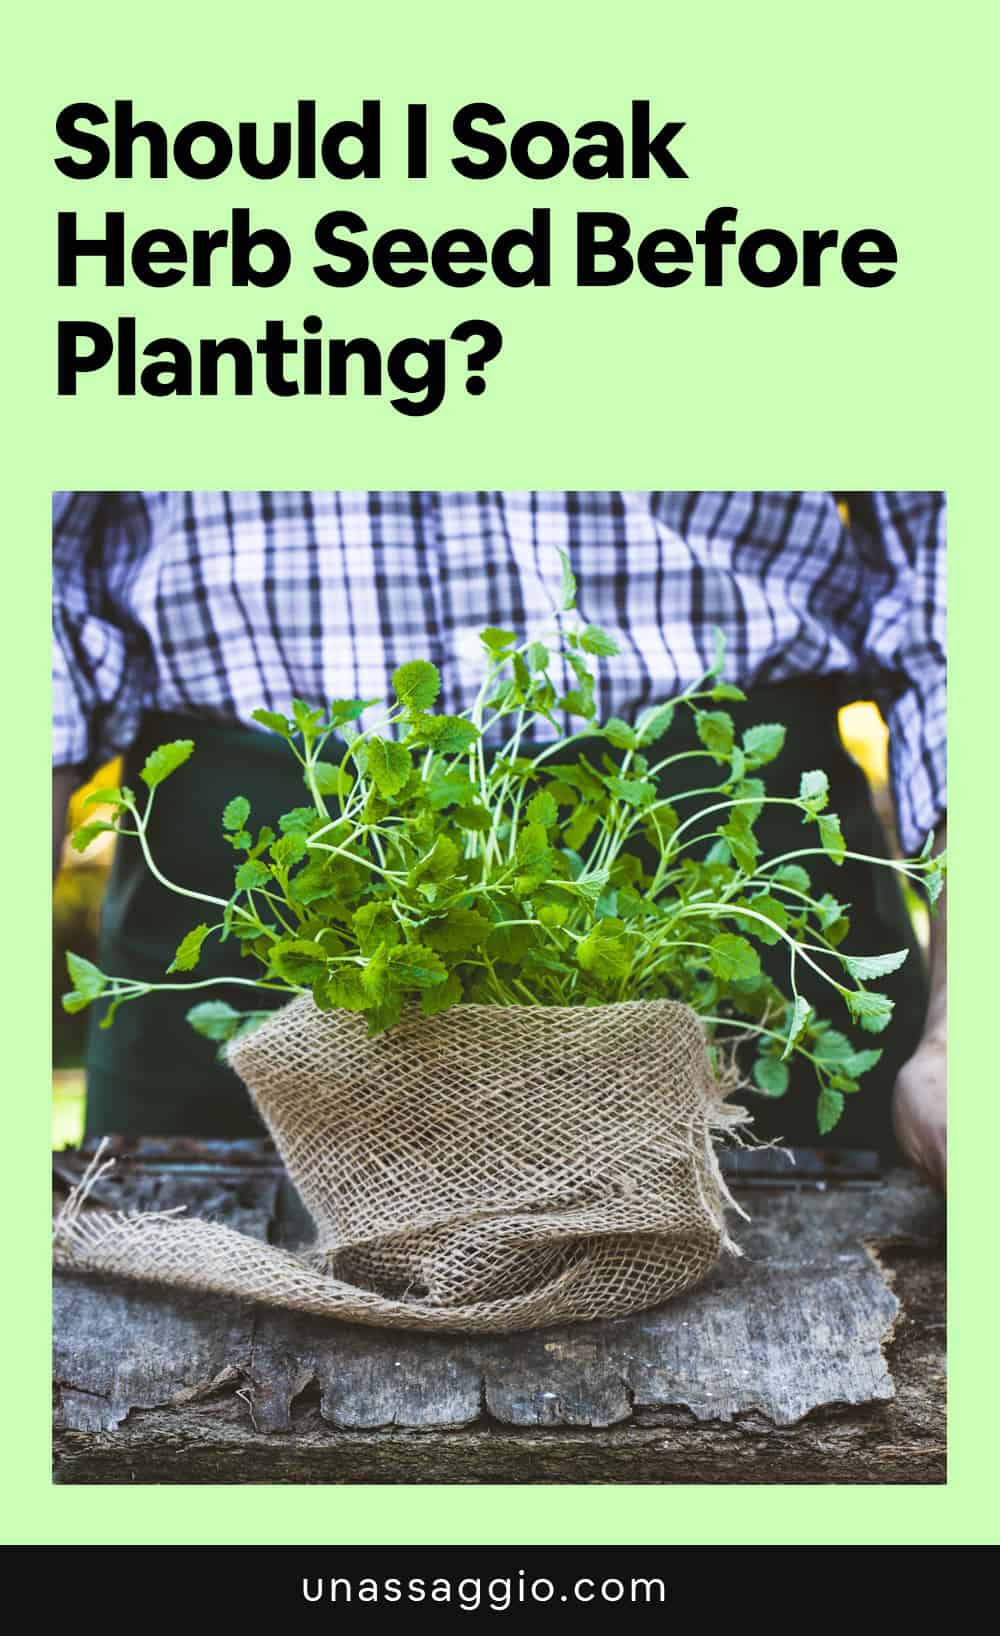 Should I soak herb seeds before planting?